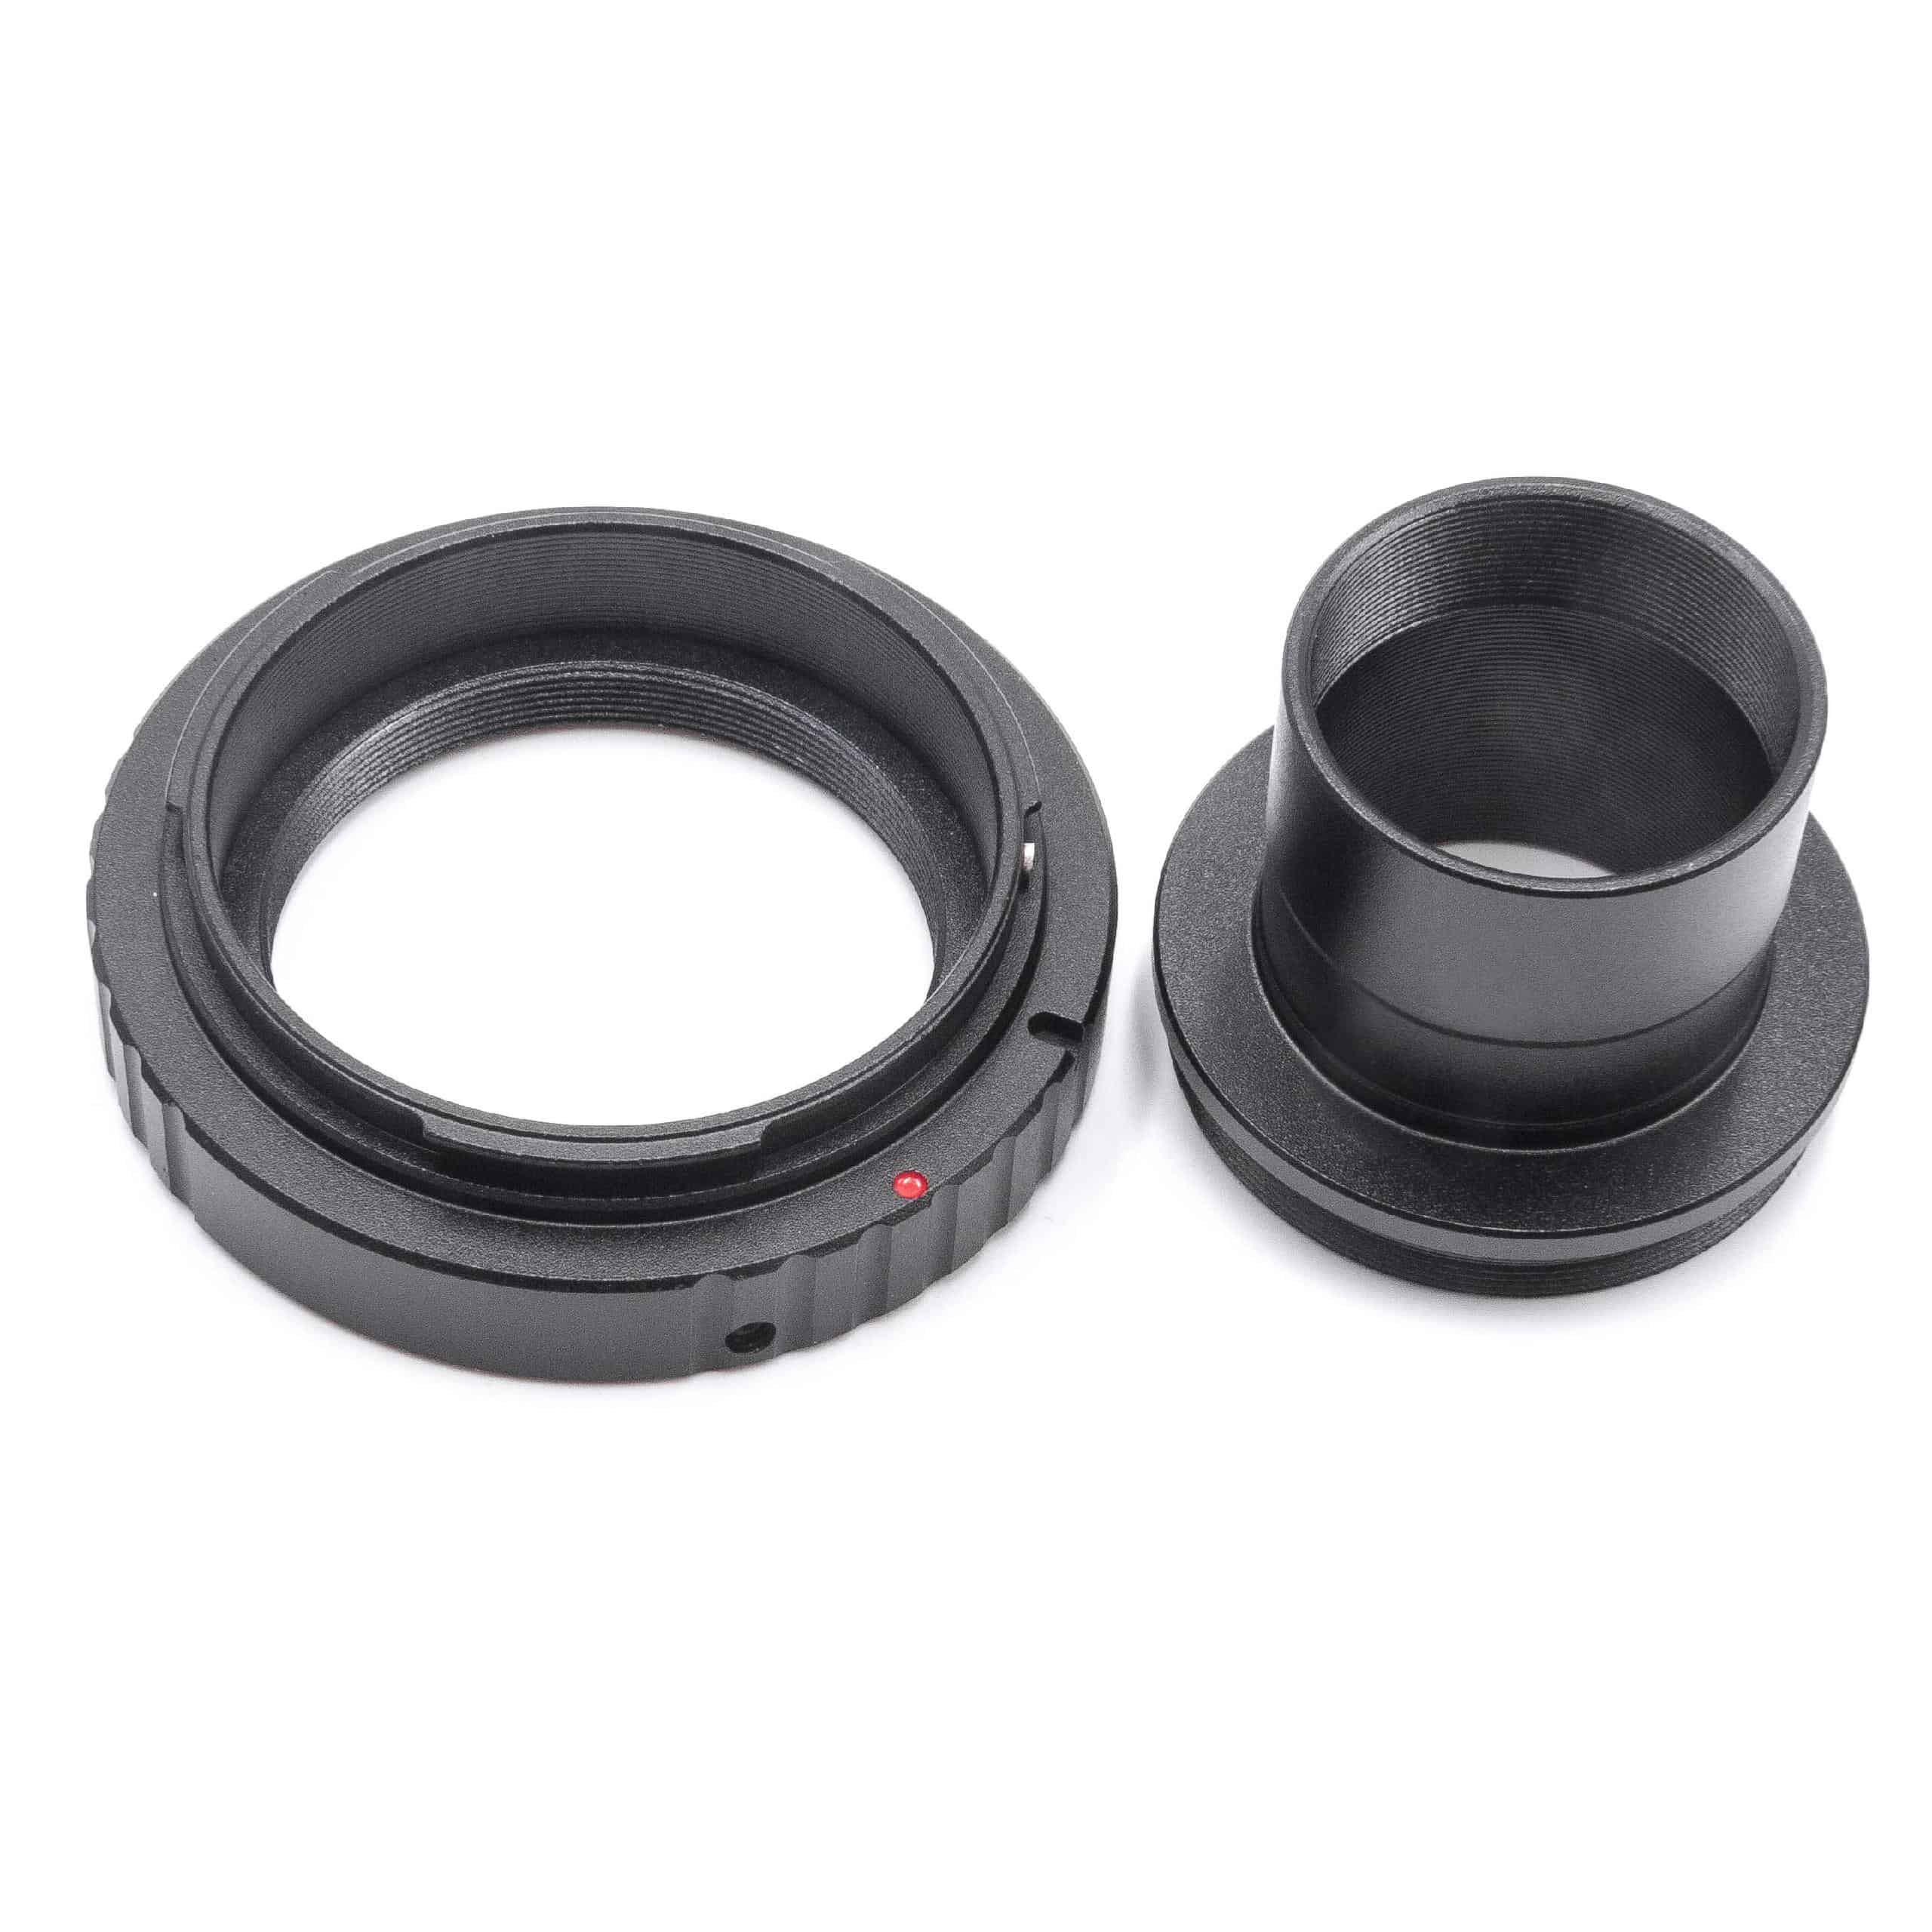 2x Anello adattatore, adattatore T2, anello per obiettivi 1,25" - M42x0,75 per Canon EOS telescopi, fotocamere